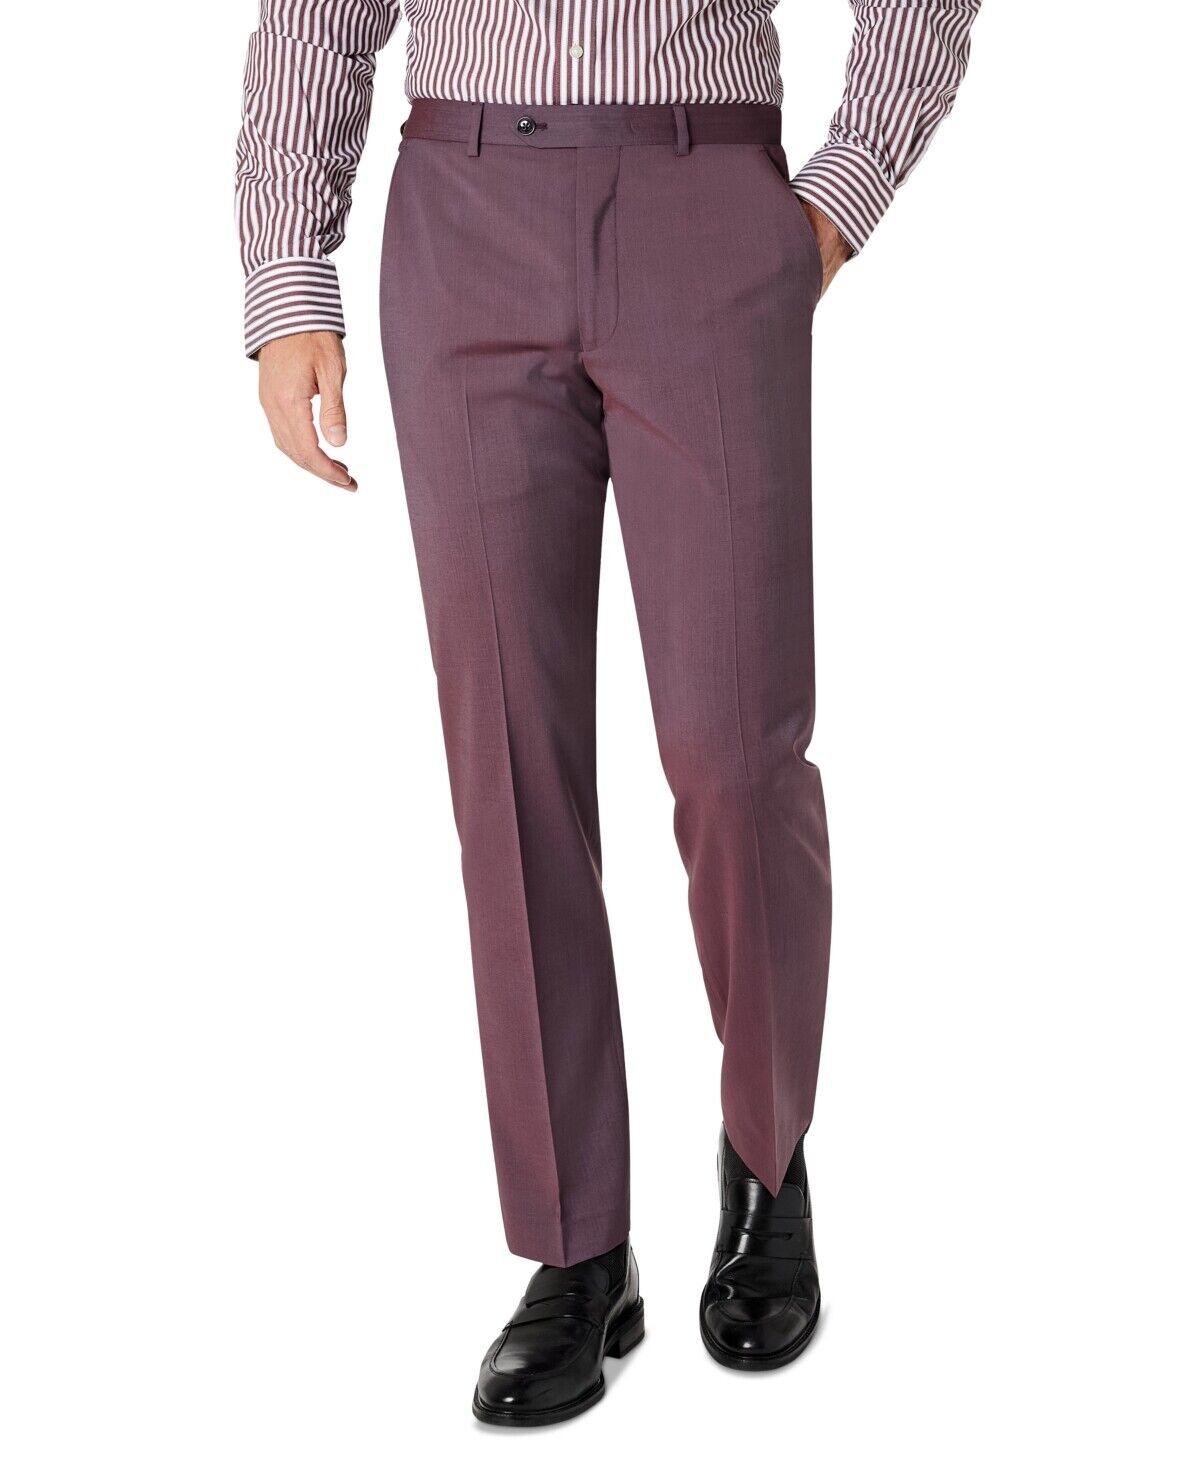 Sean John Men's Classic-Fit Suit Separate Pants Purple 38 x 34